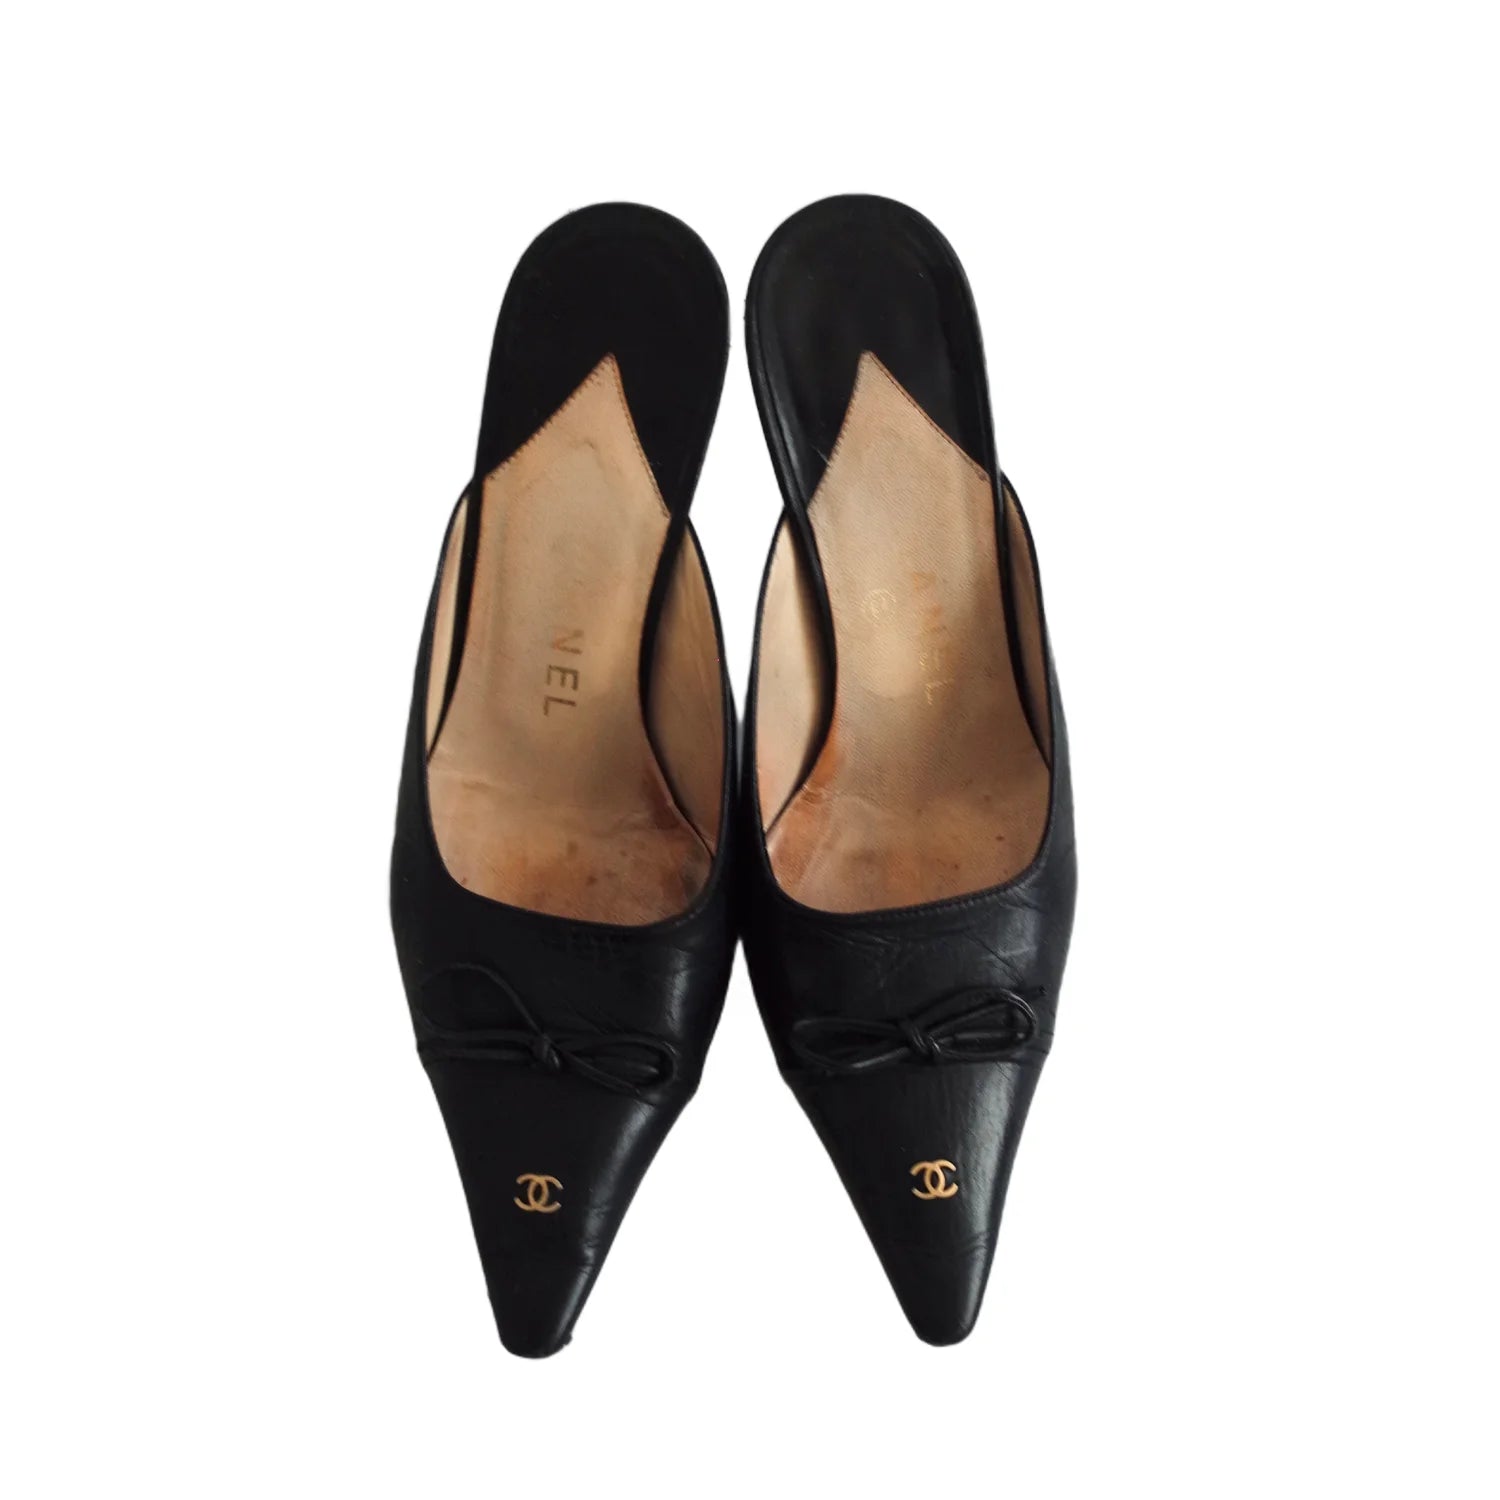 Chanel Logo Bow Mule Heels in Black, 37  Chanel Bow Heels